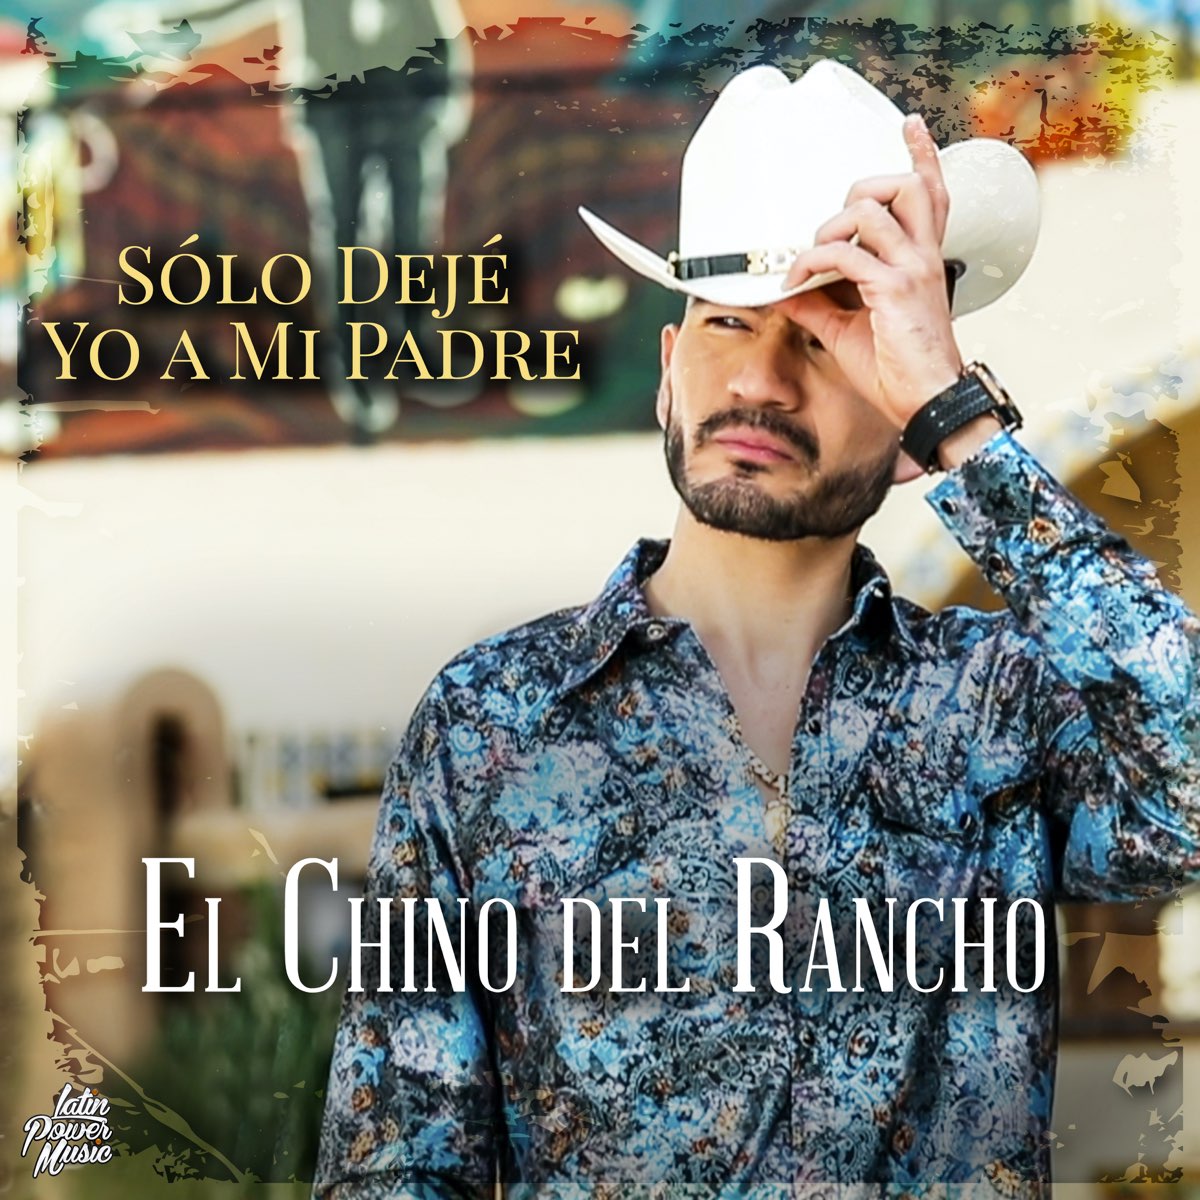 Solo Dejé Yo a Mi Padre - Single par El Chino del Rancho sur Apple Music